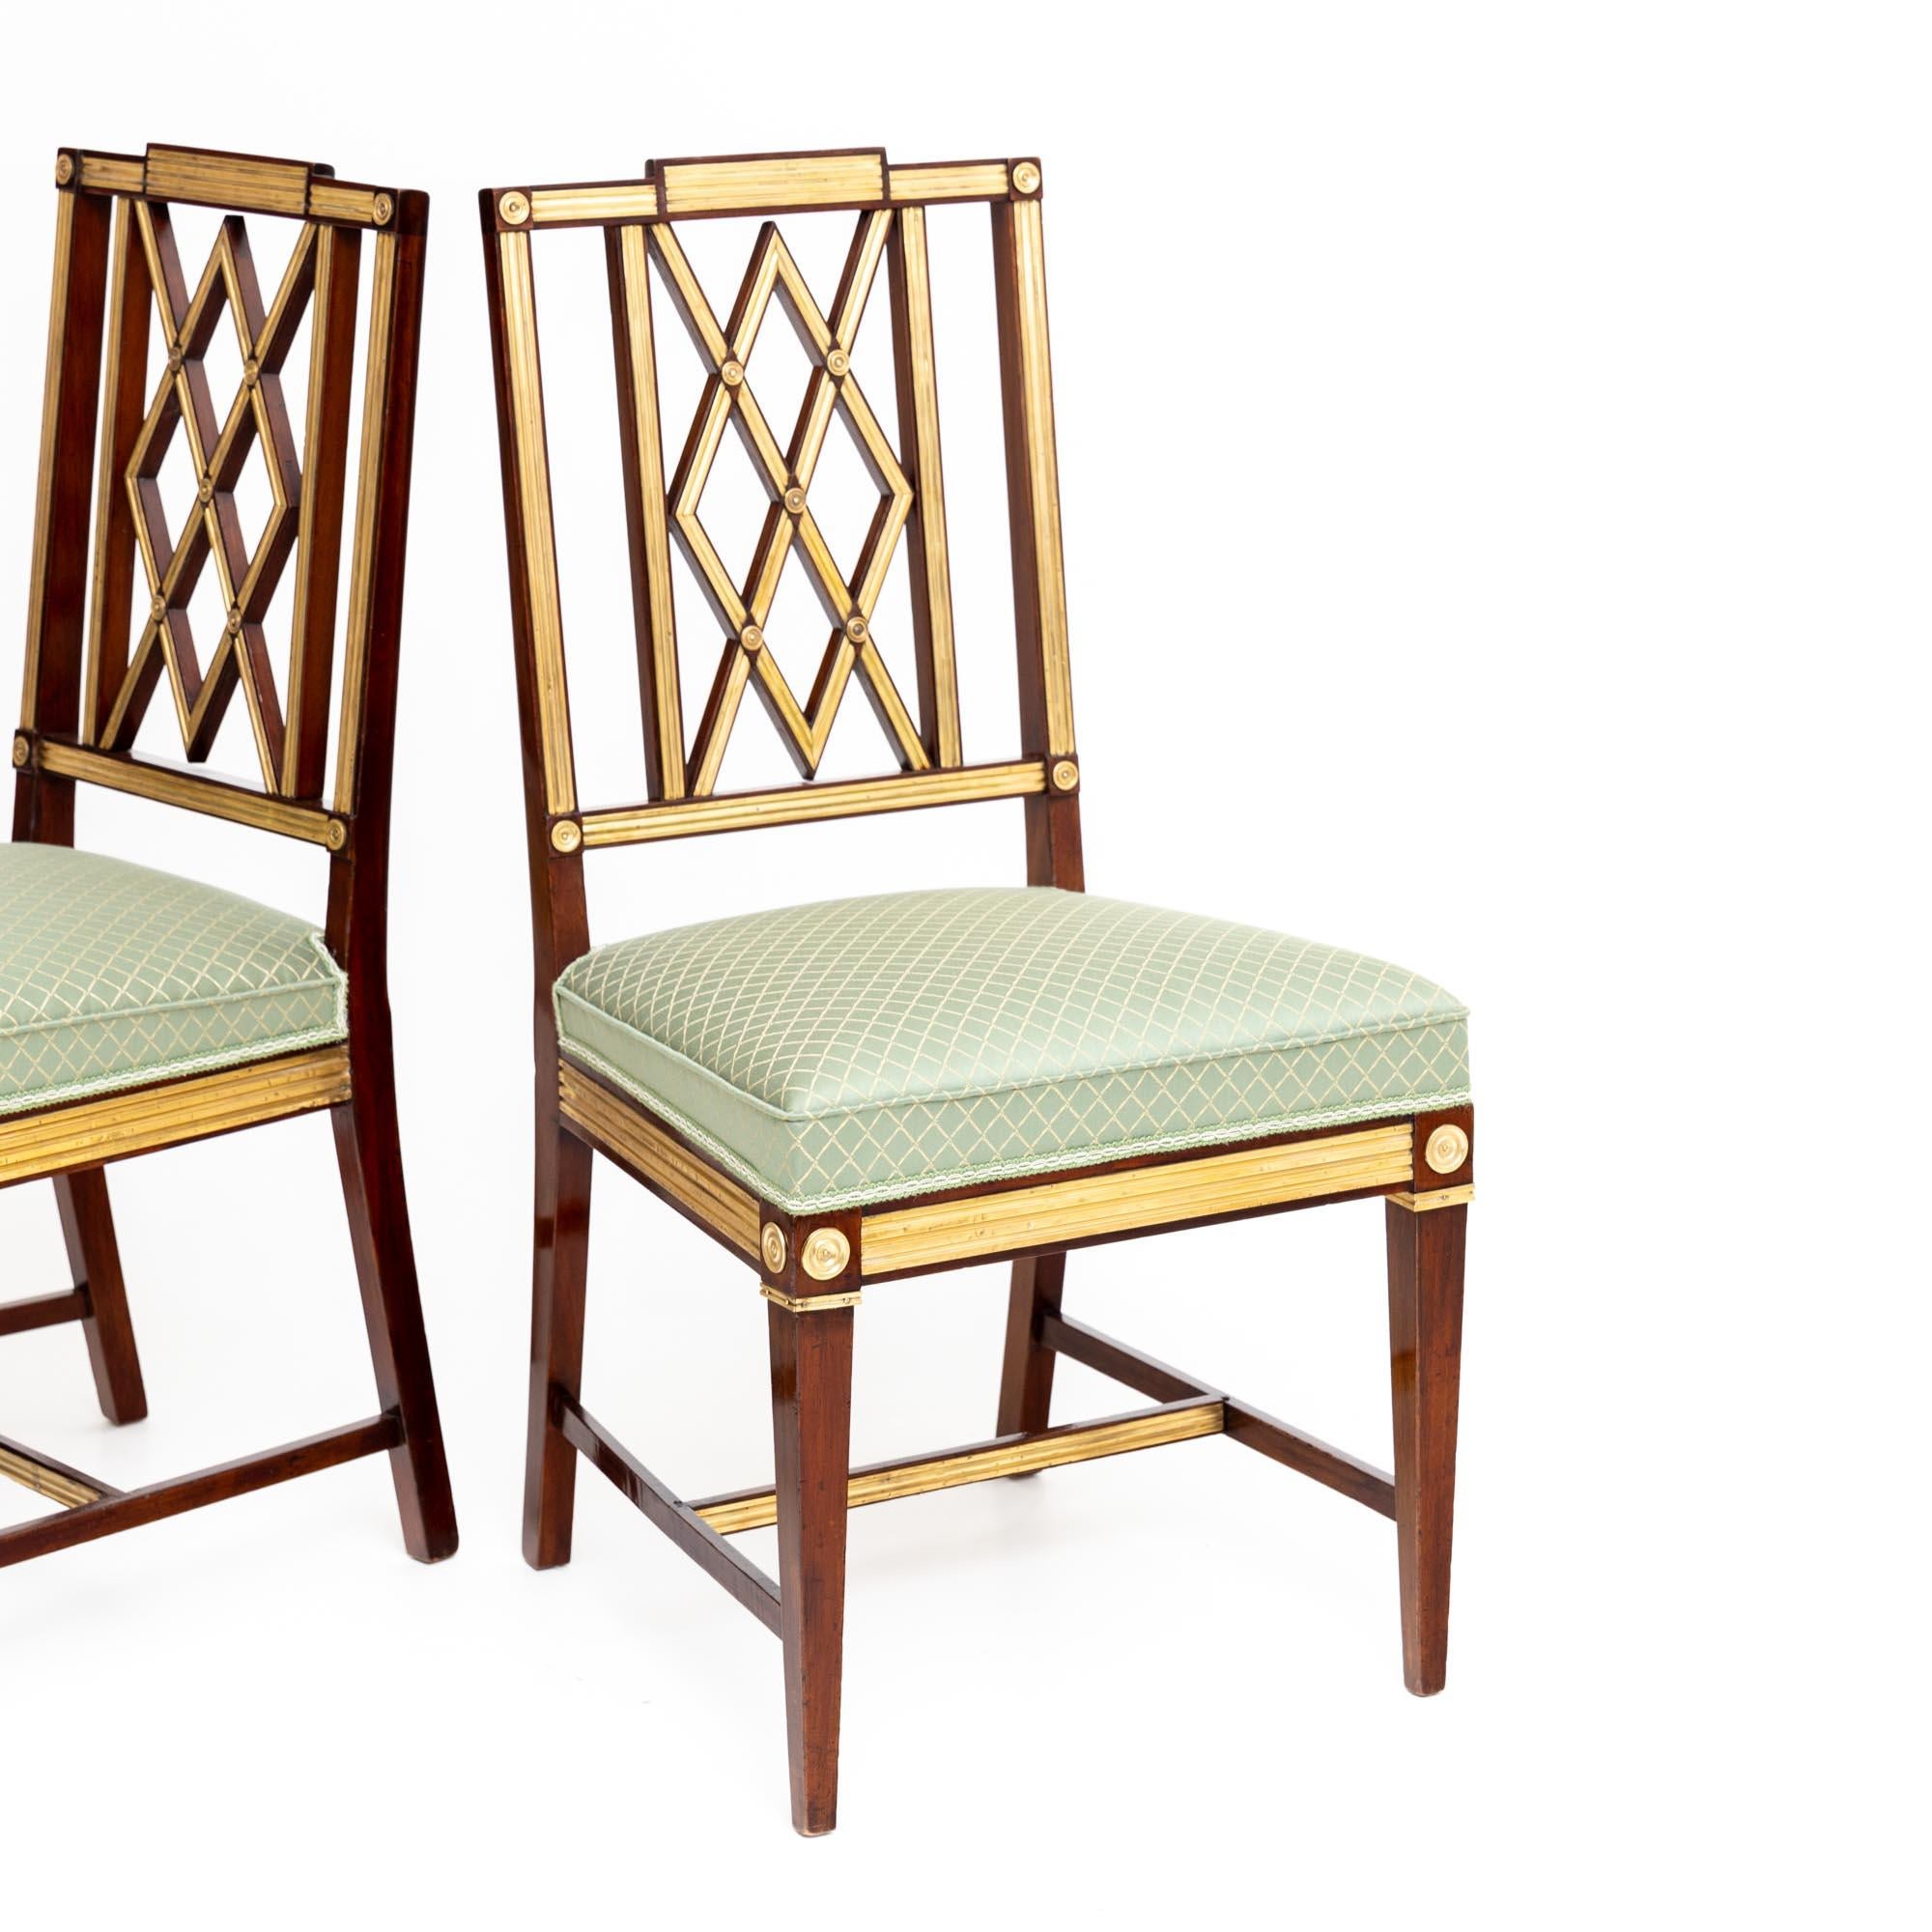 Satz von drei neoklassischen Esszimmerstühlen aus Mahagoni mit Messingverzierung und rautenförmiger Rückenlehne. Die Stühle stehen auf quadratischen Beinen mit H-förmigen Verstrebungen. Die Sitze sind gepolstert und mit einem hochwertigen hellgrünen